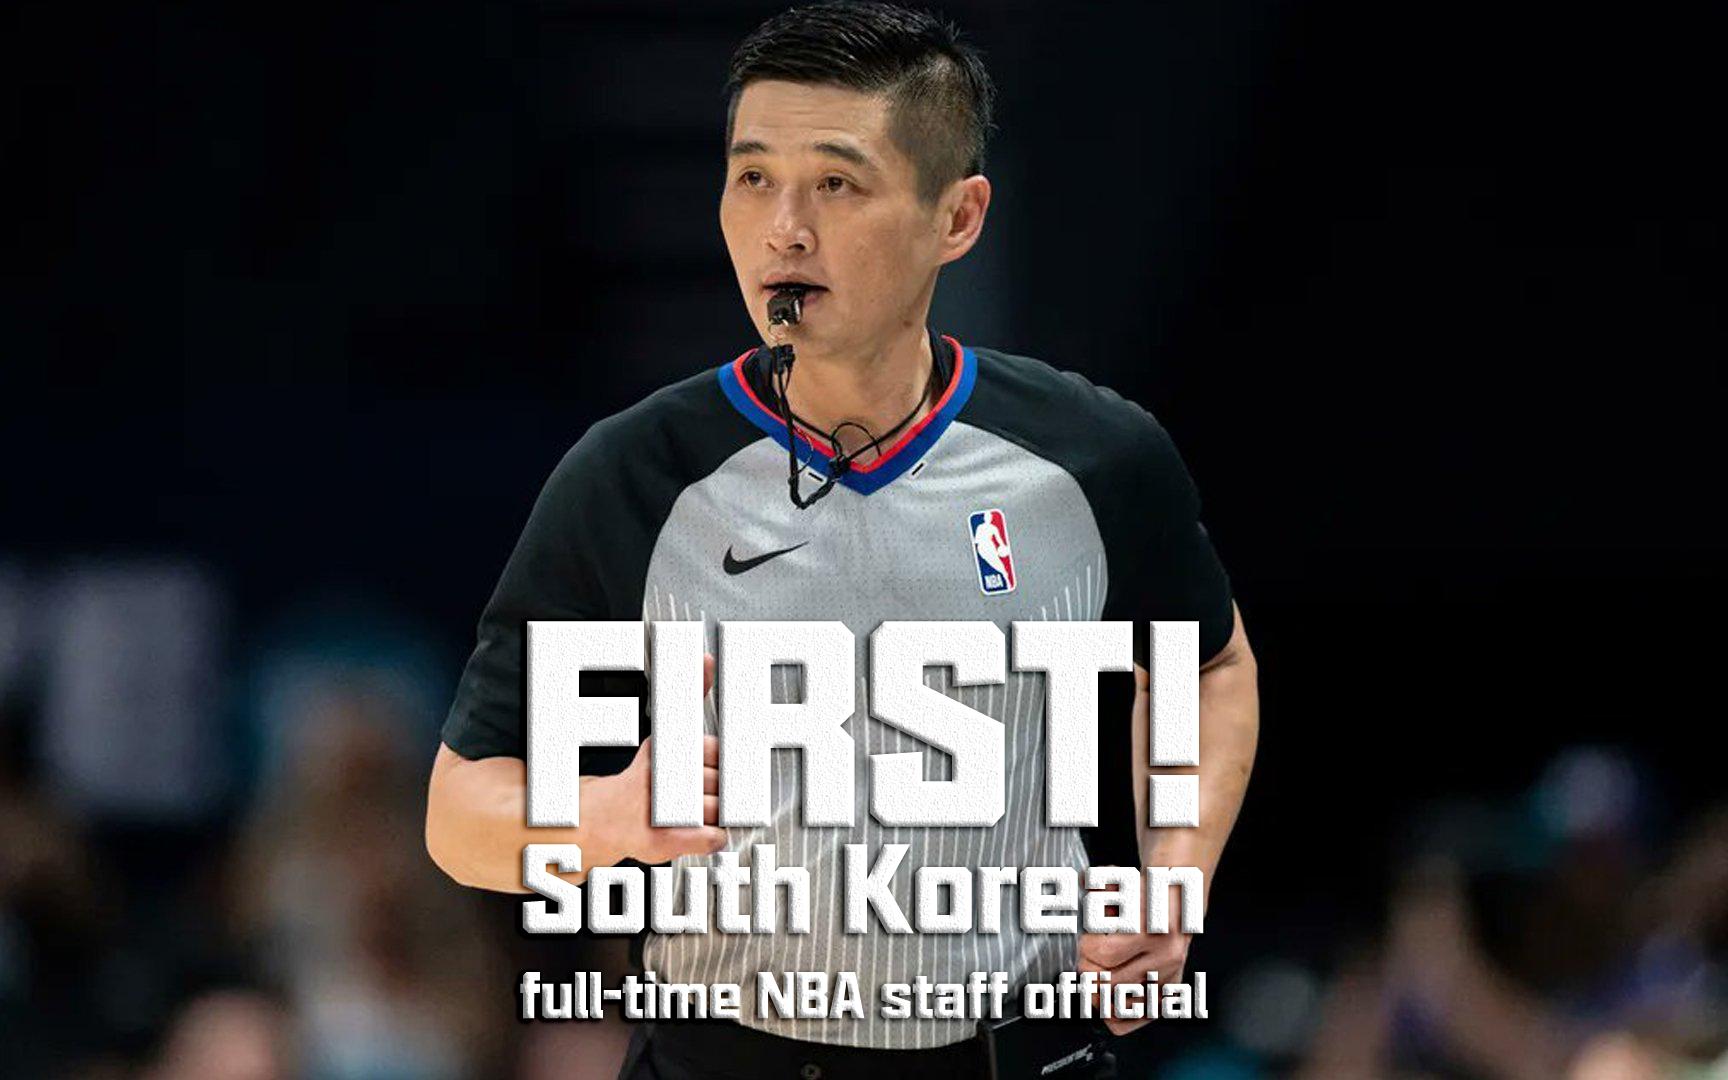 黄仁泰晋升至NBA 成为历史第一位韩国籍的NBA全职裁判